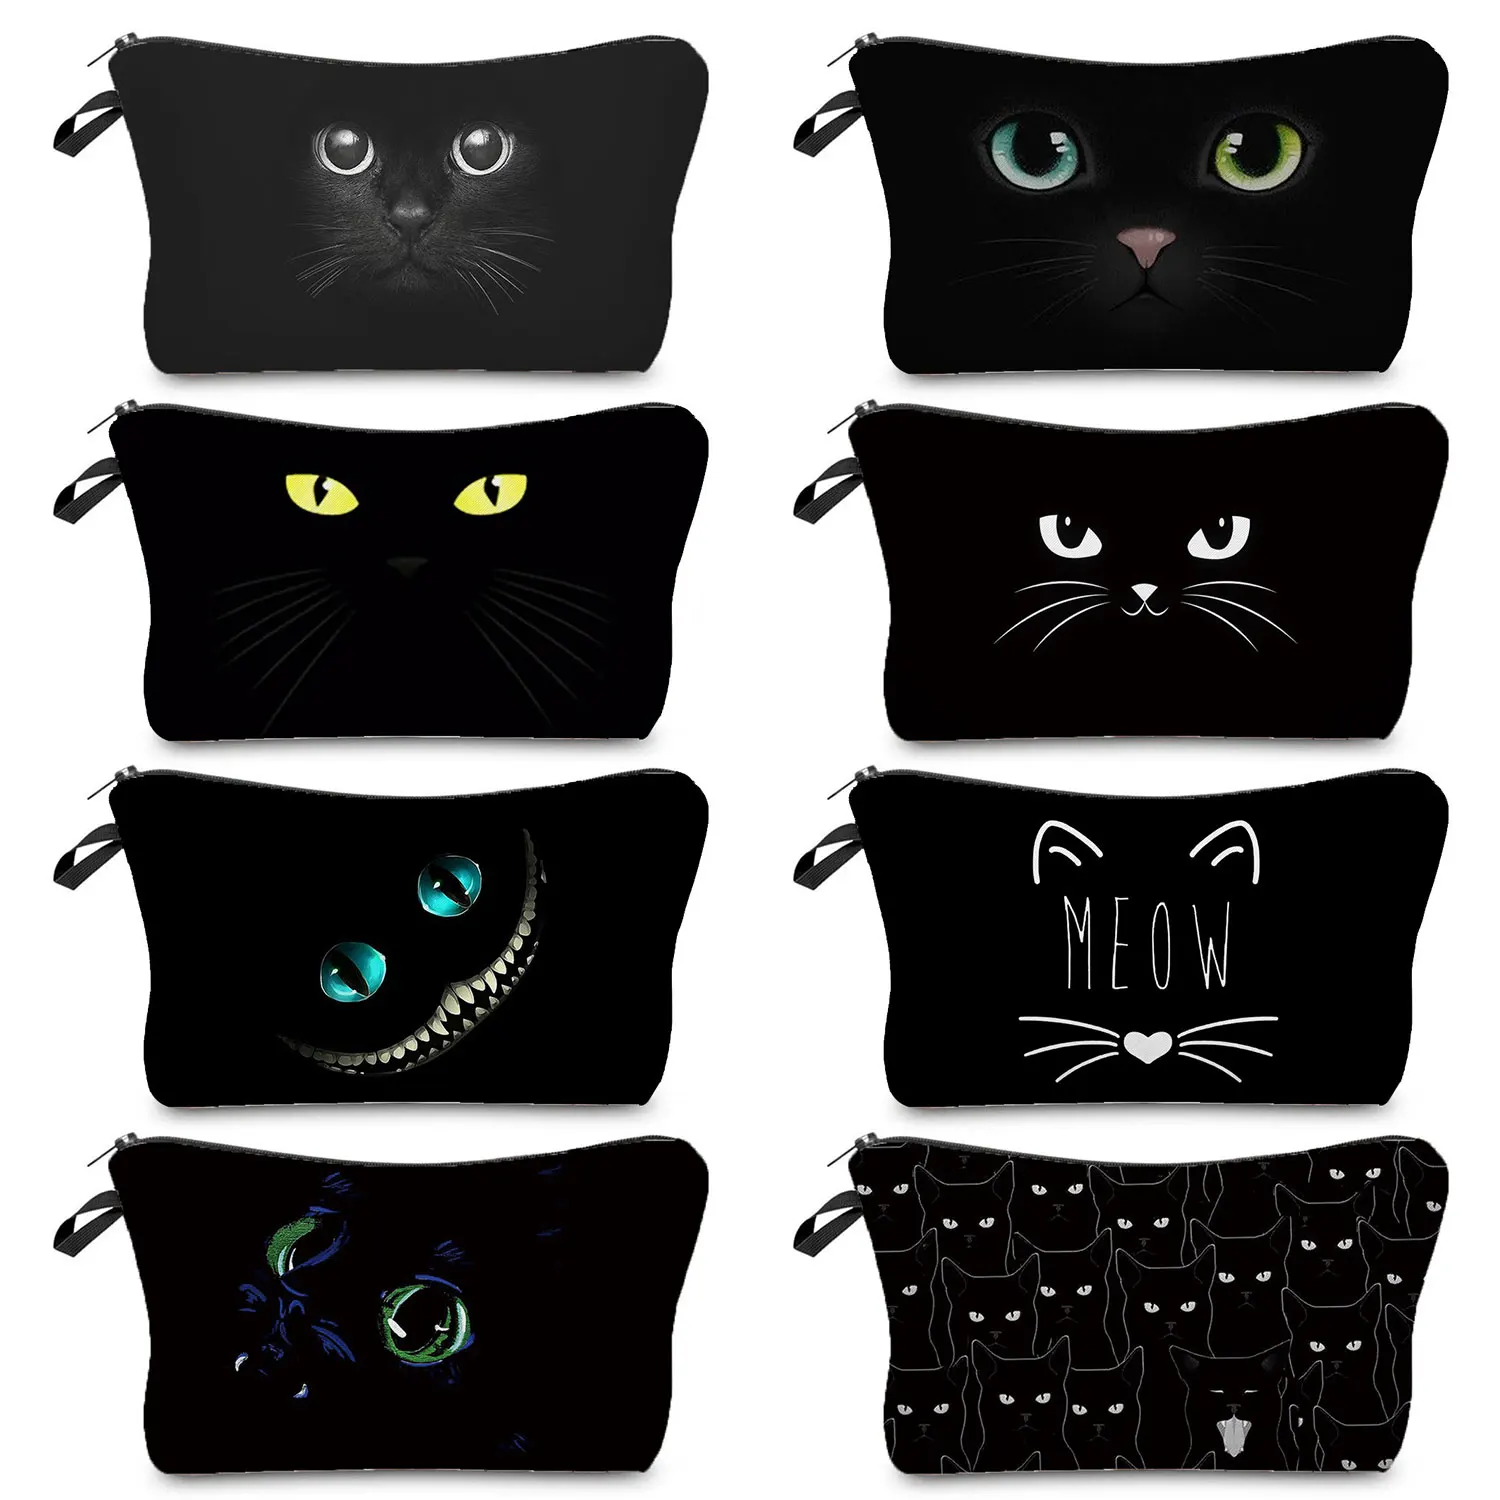 

Сумочка для карандашей, набор туалетных принадлежностей, эко-многоразовый милый органайзер для макияжа, сумки с мультяшным принтом черной кошки, женская косметичка для путешествий